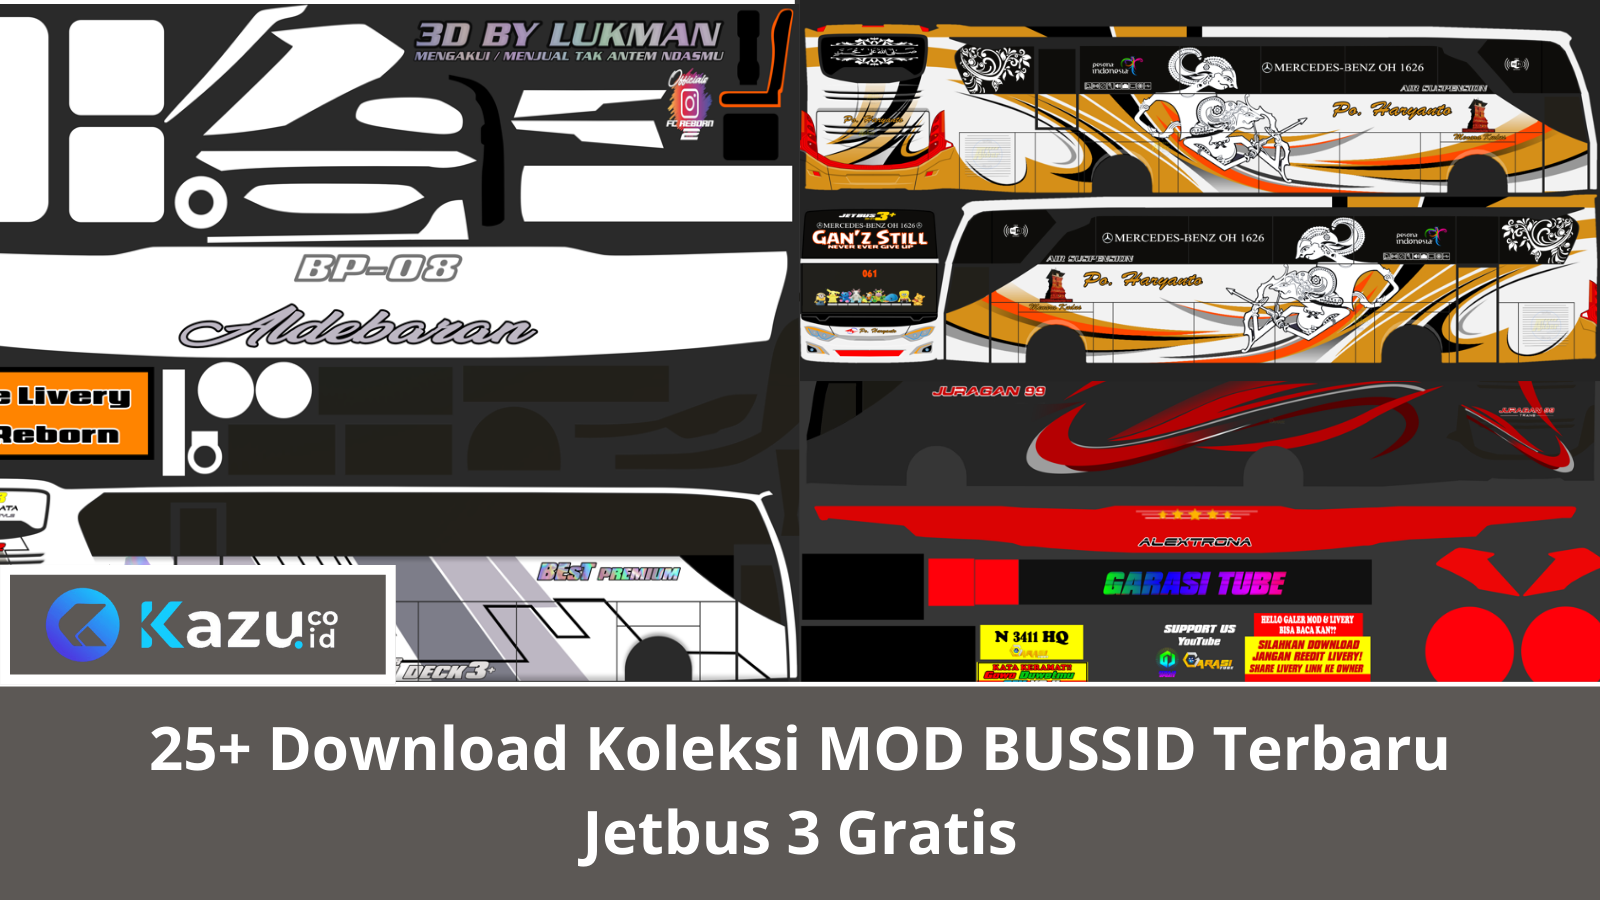 25+ Download Koleksi MOD BUSSID Terbaru Jetbus 3 Gratis